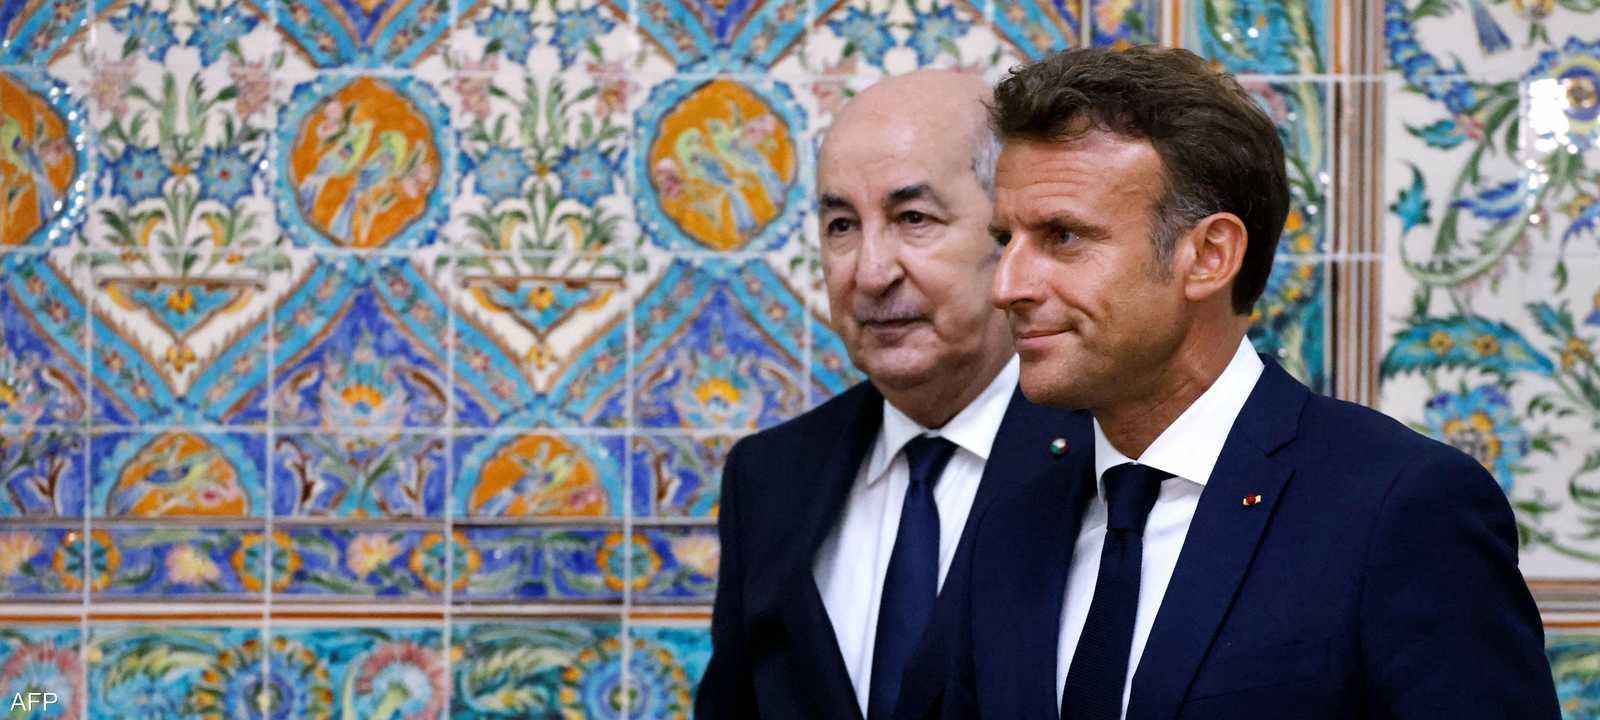 الرئيس الفرنسي والرئيس الجزائري